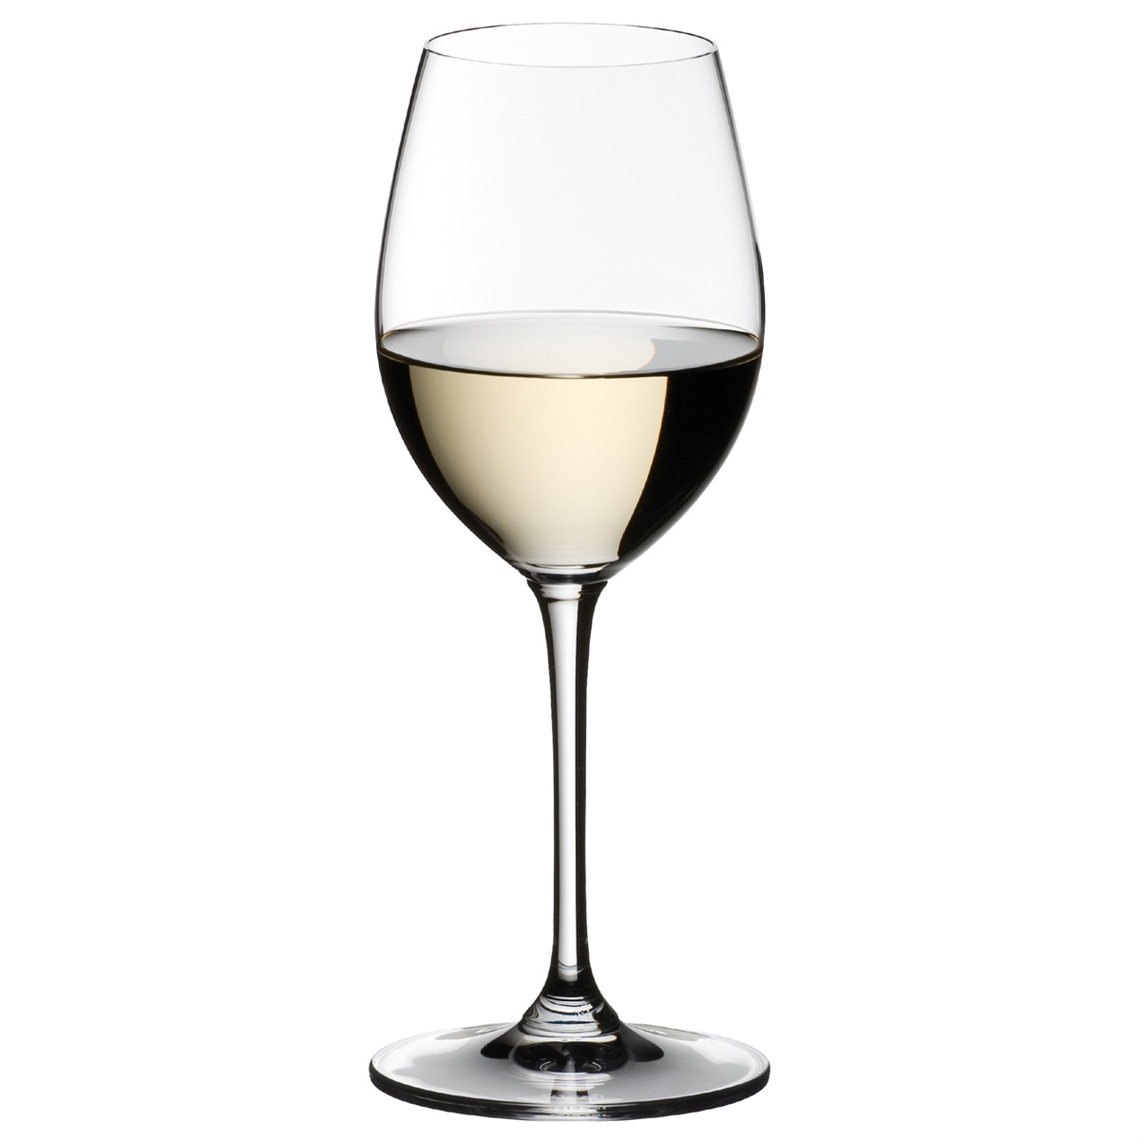 View more cabernet sauvignon wine glasses from our Dessert Wine Glasses range